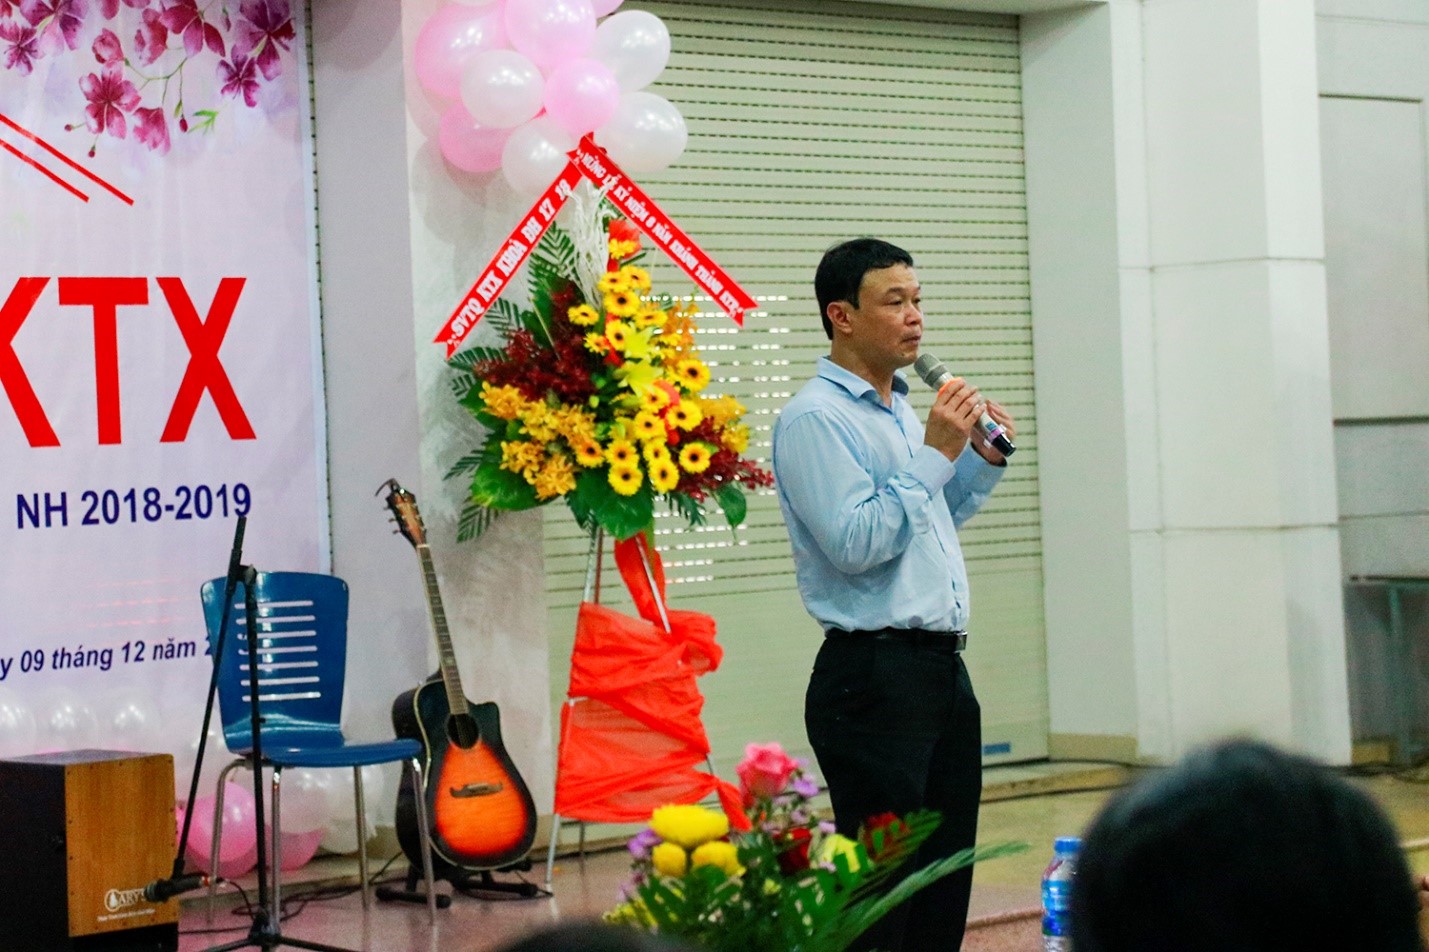 Thày Nguyễn Đức Hiếu, Giám đốc Ký túc xá phát biểu khai mạc Chương trình